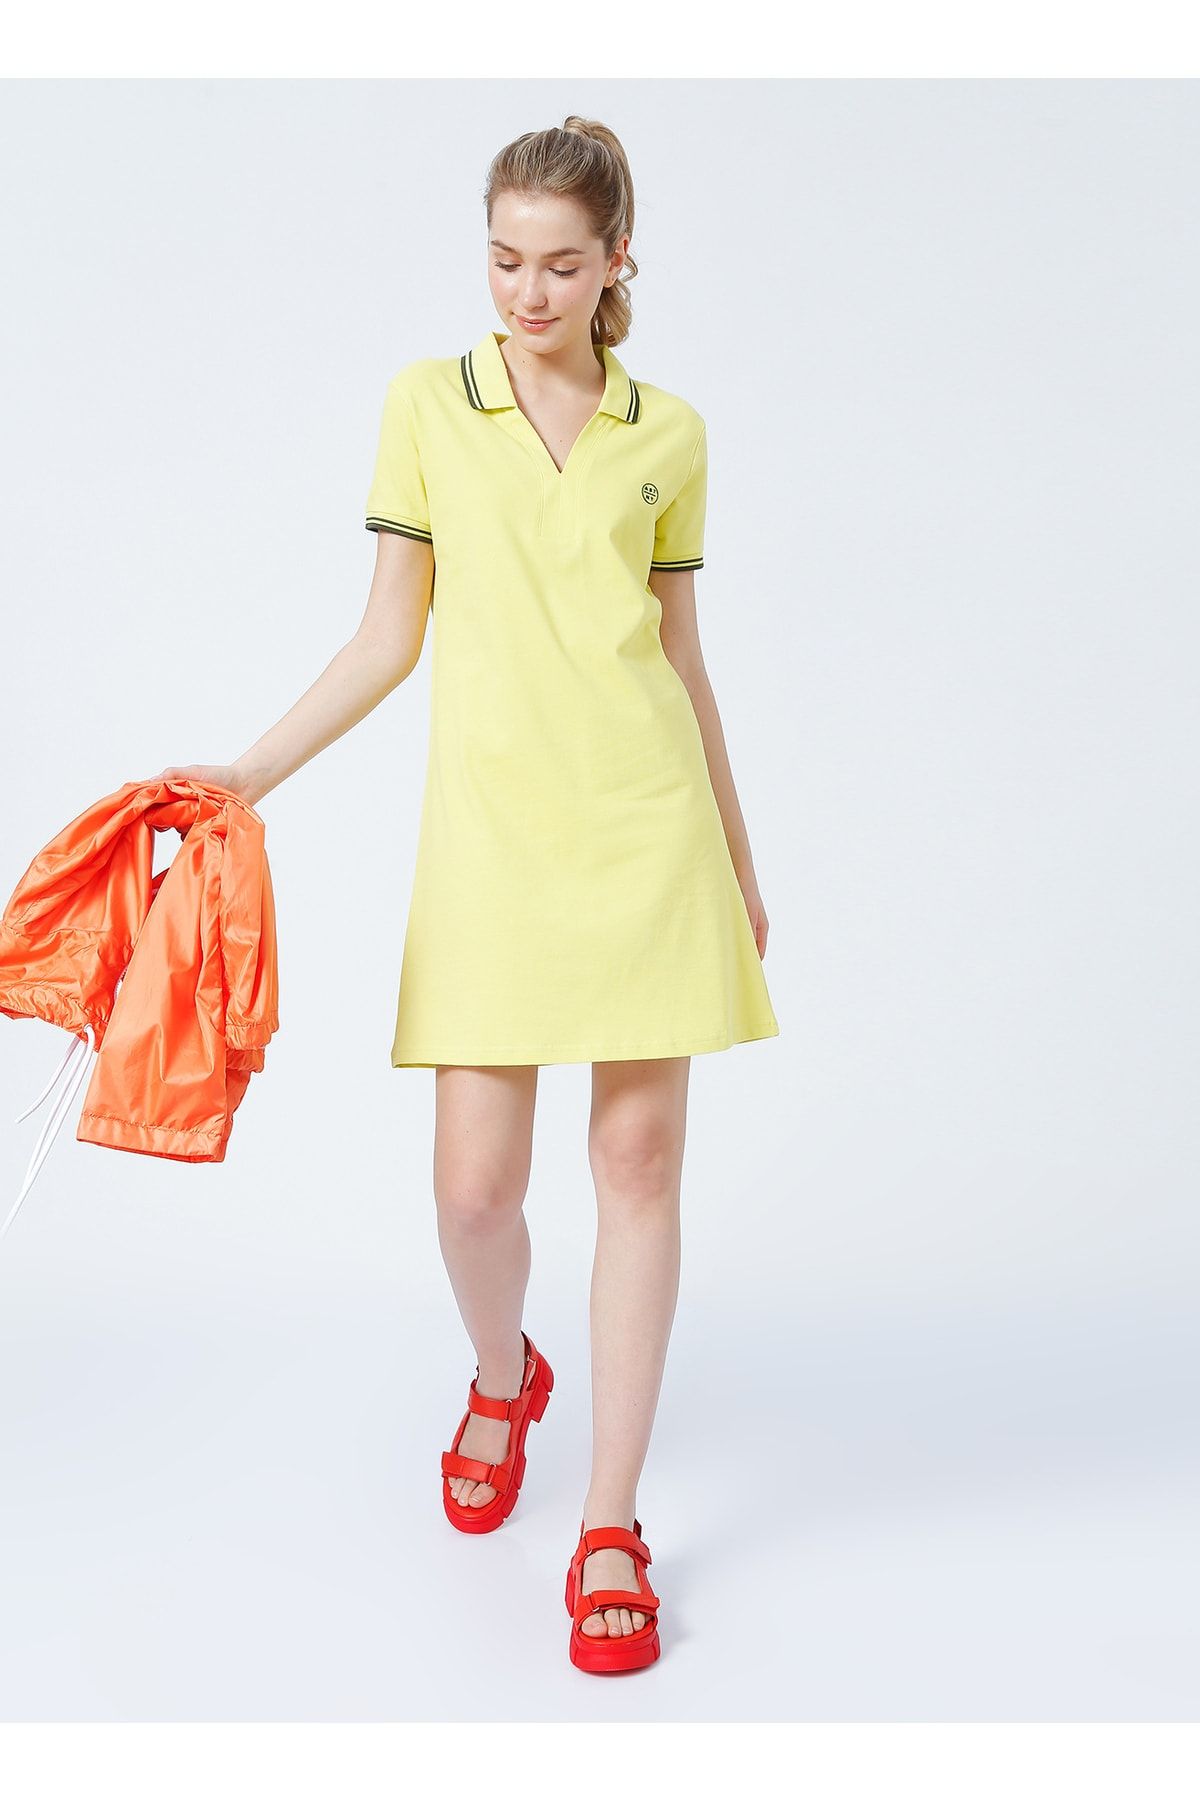 Aeropostale Rosie Polo Yaka Basic Düz Sarı Kadın Elbise